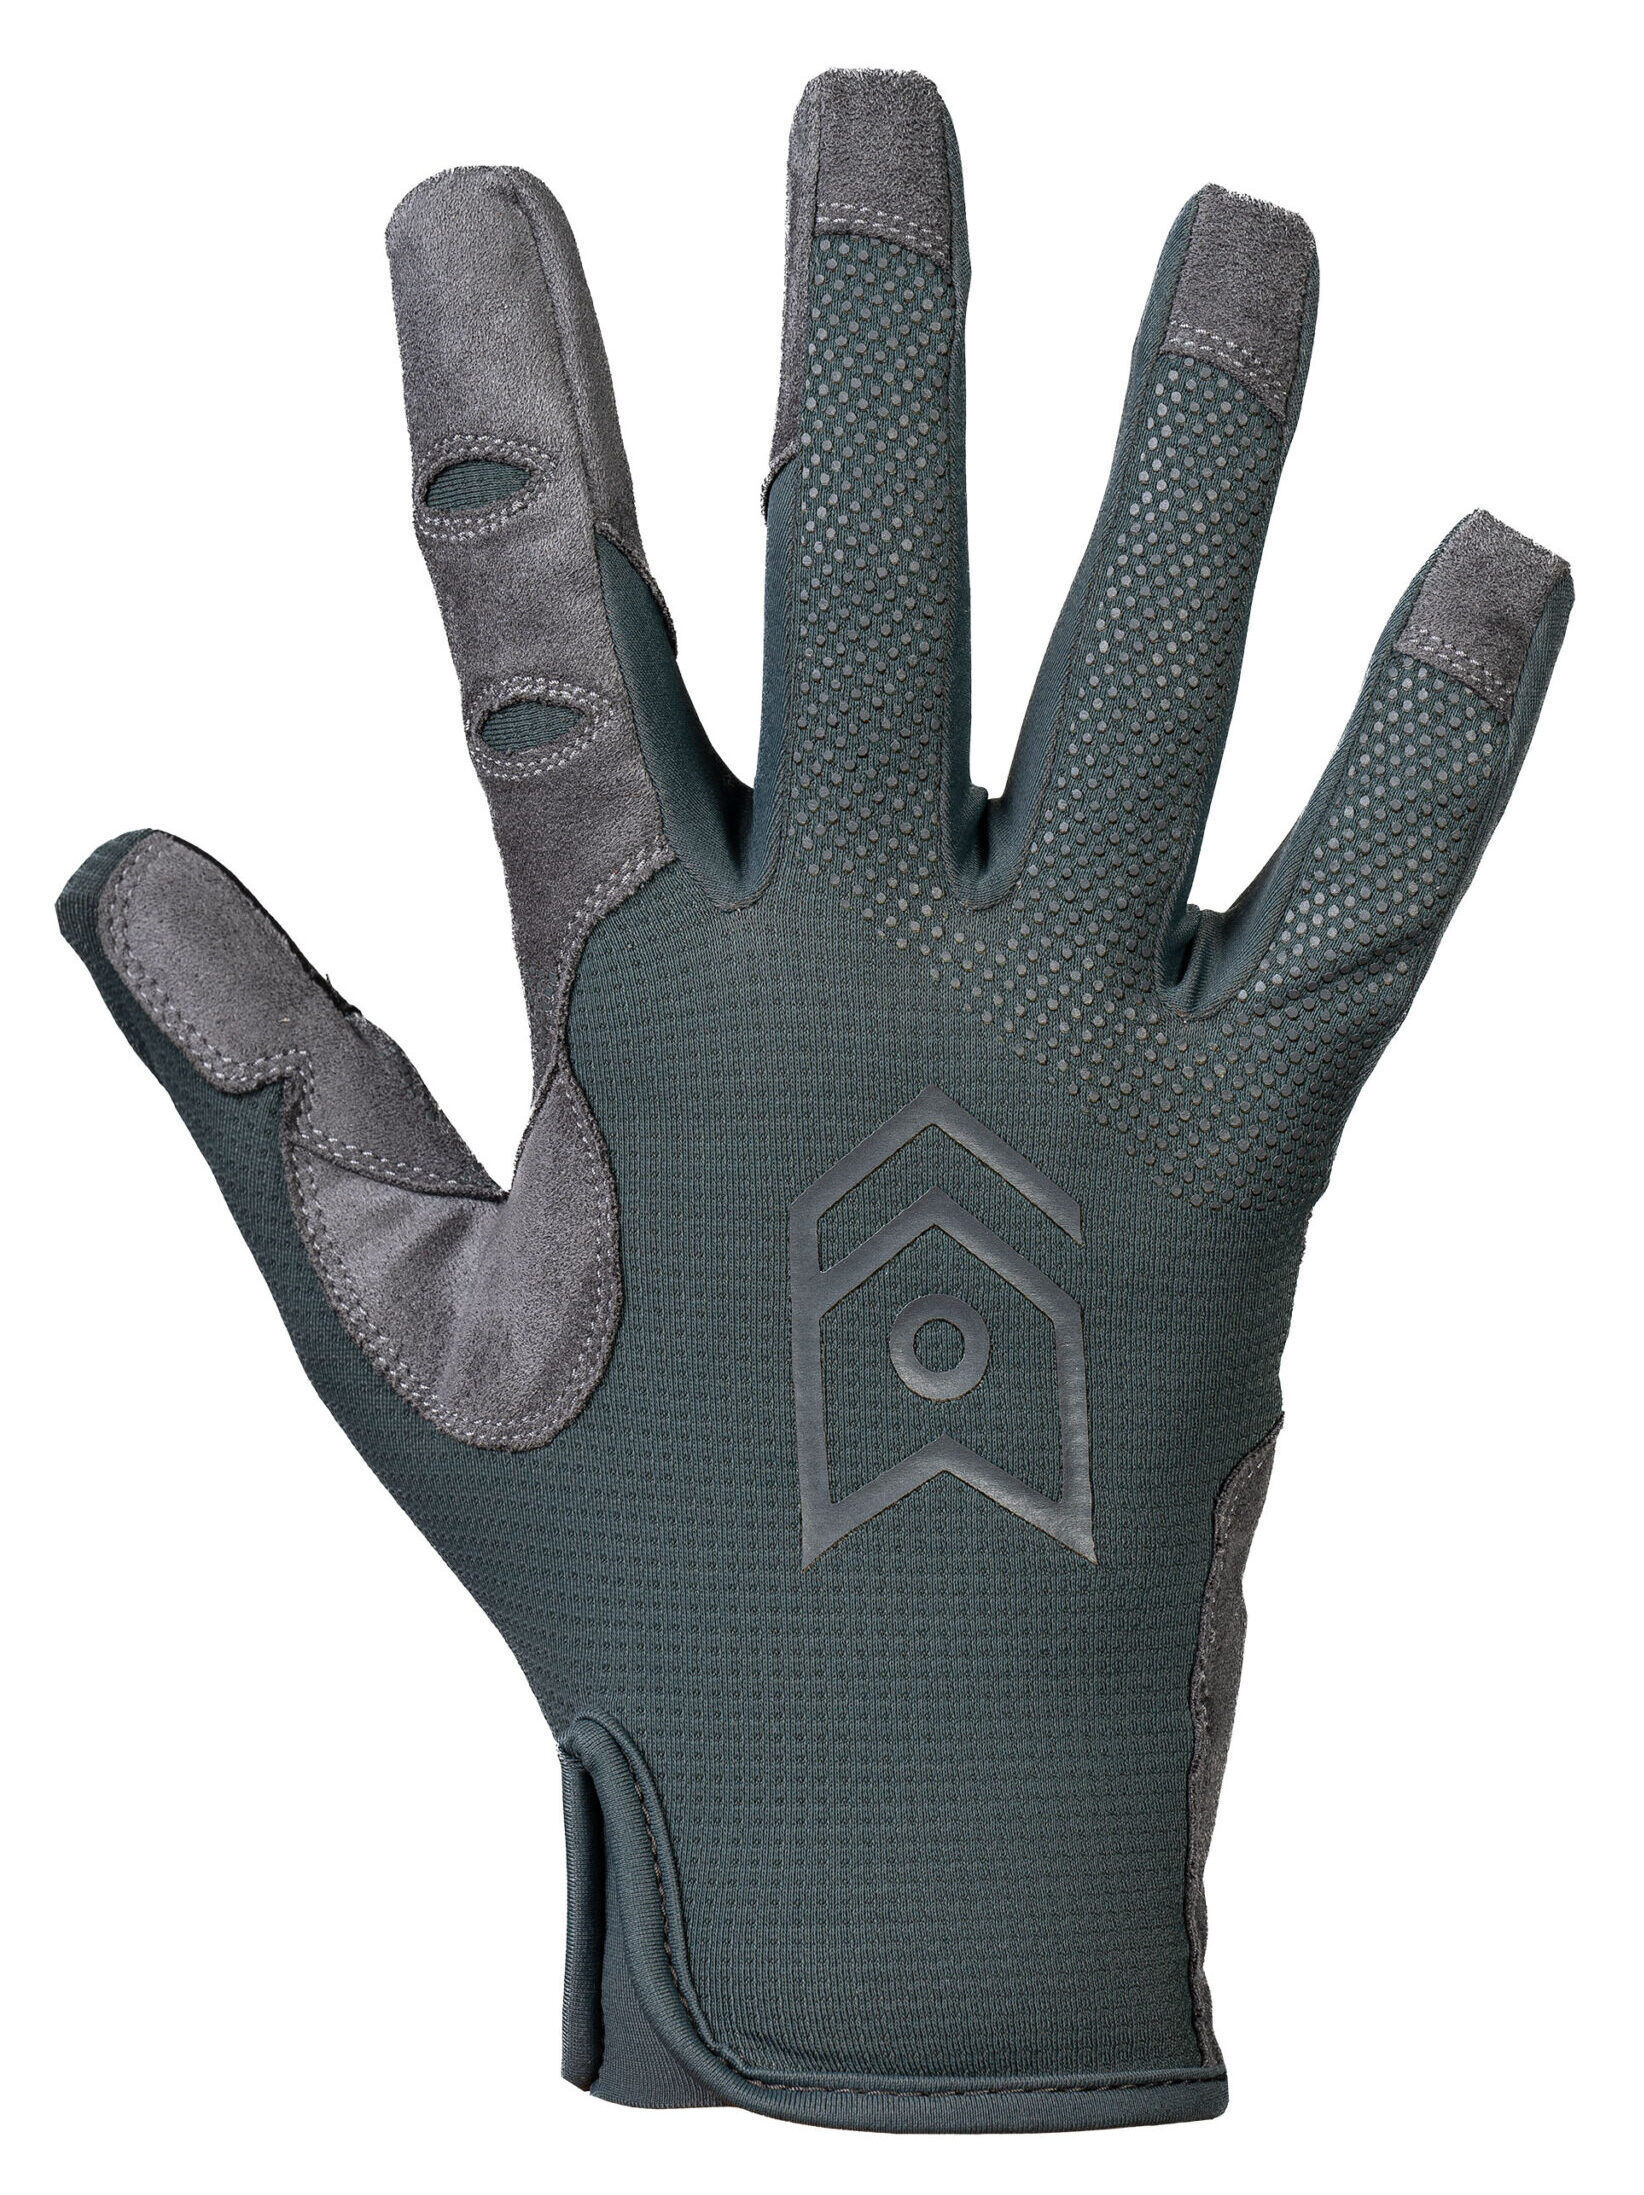 MoG Target Light Duty Black Tactical gloves